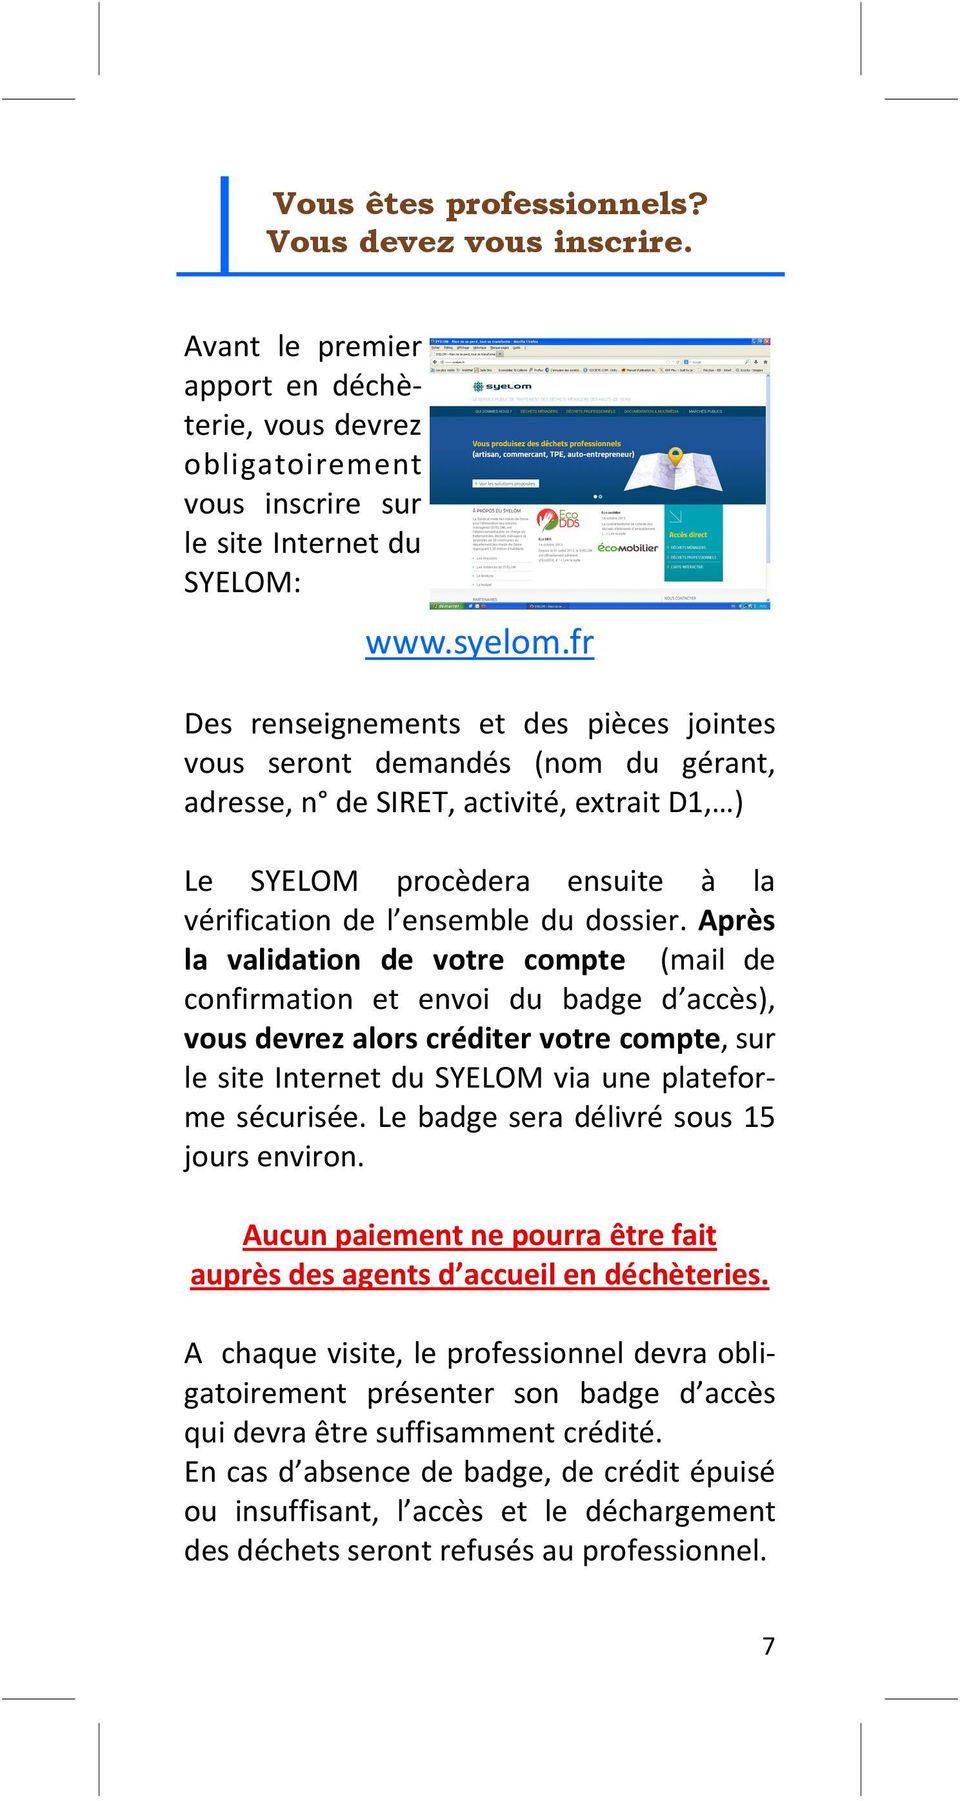 Après la validation de votre compte (mail de confirmation et envoi du badge d accès), vous devrez alors créditer votre compte, sur le site Internet du SYELOM via une plateforme sécurisée.